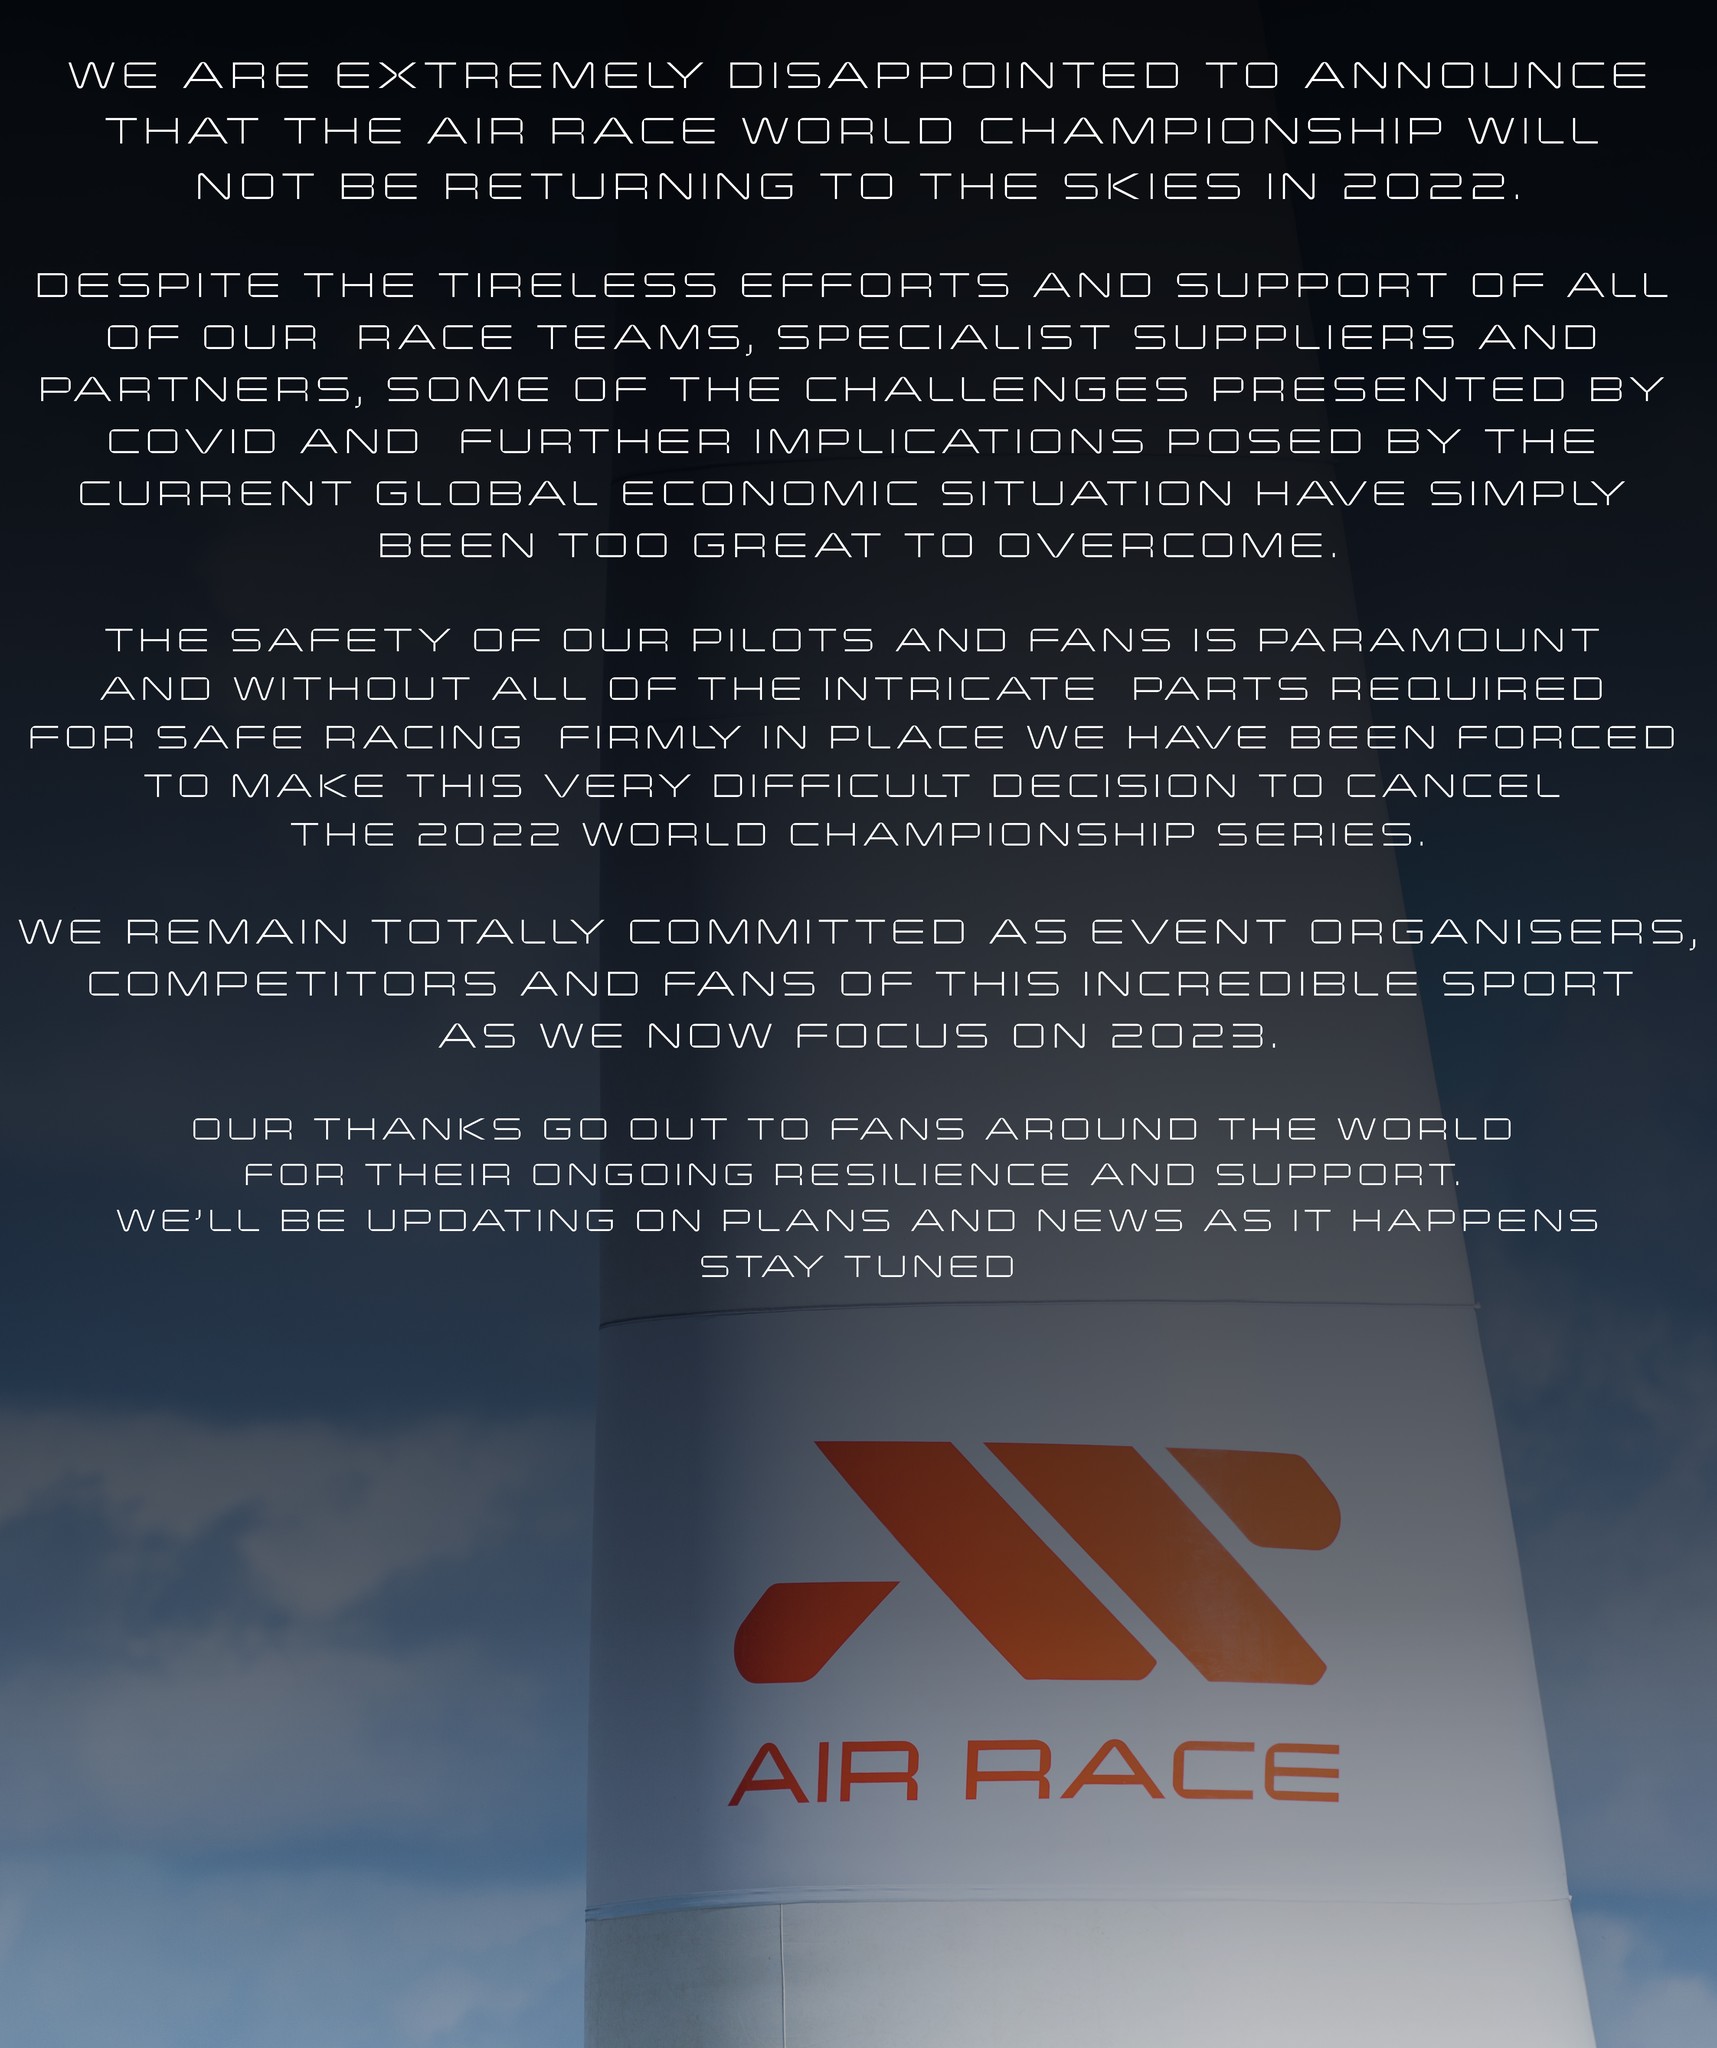 Vyjádření organizátorů k zrušení série závodů 2022 / Foto: Facebook.com @AIR RACE